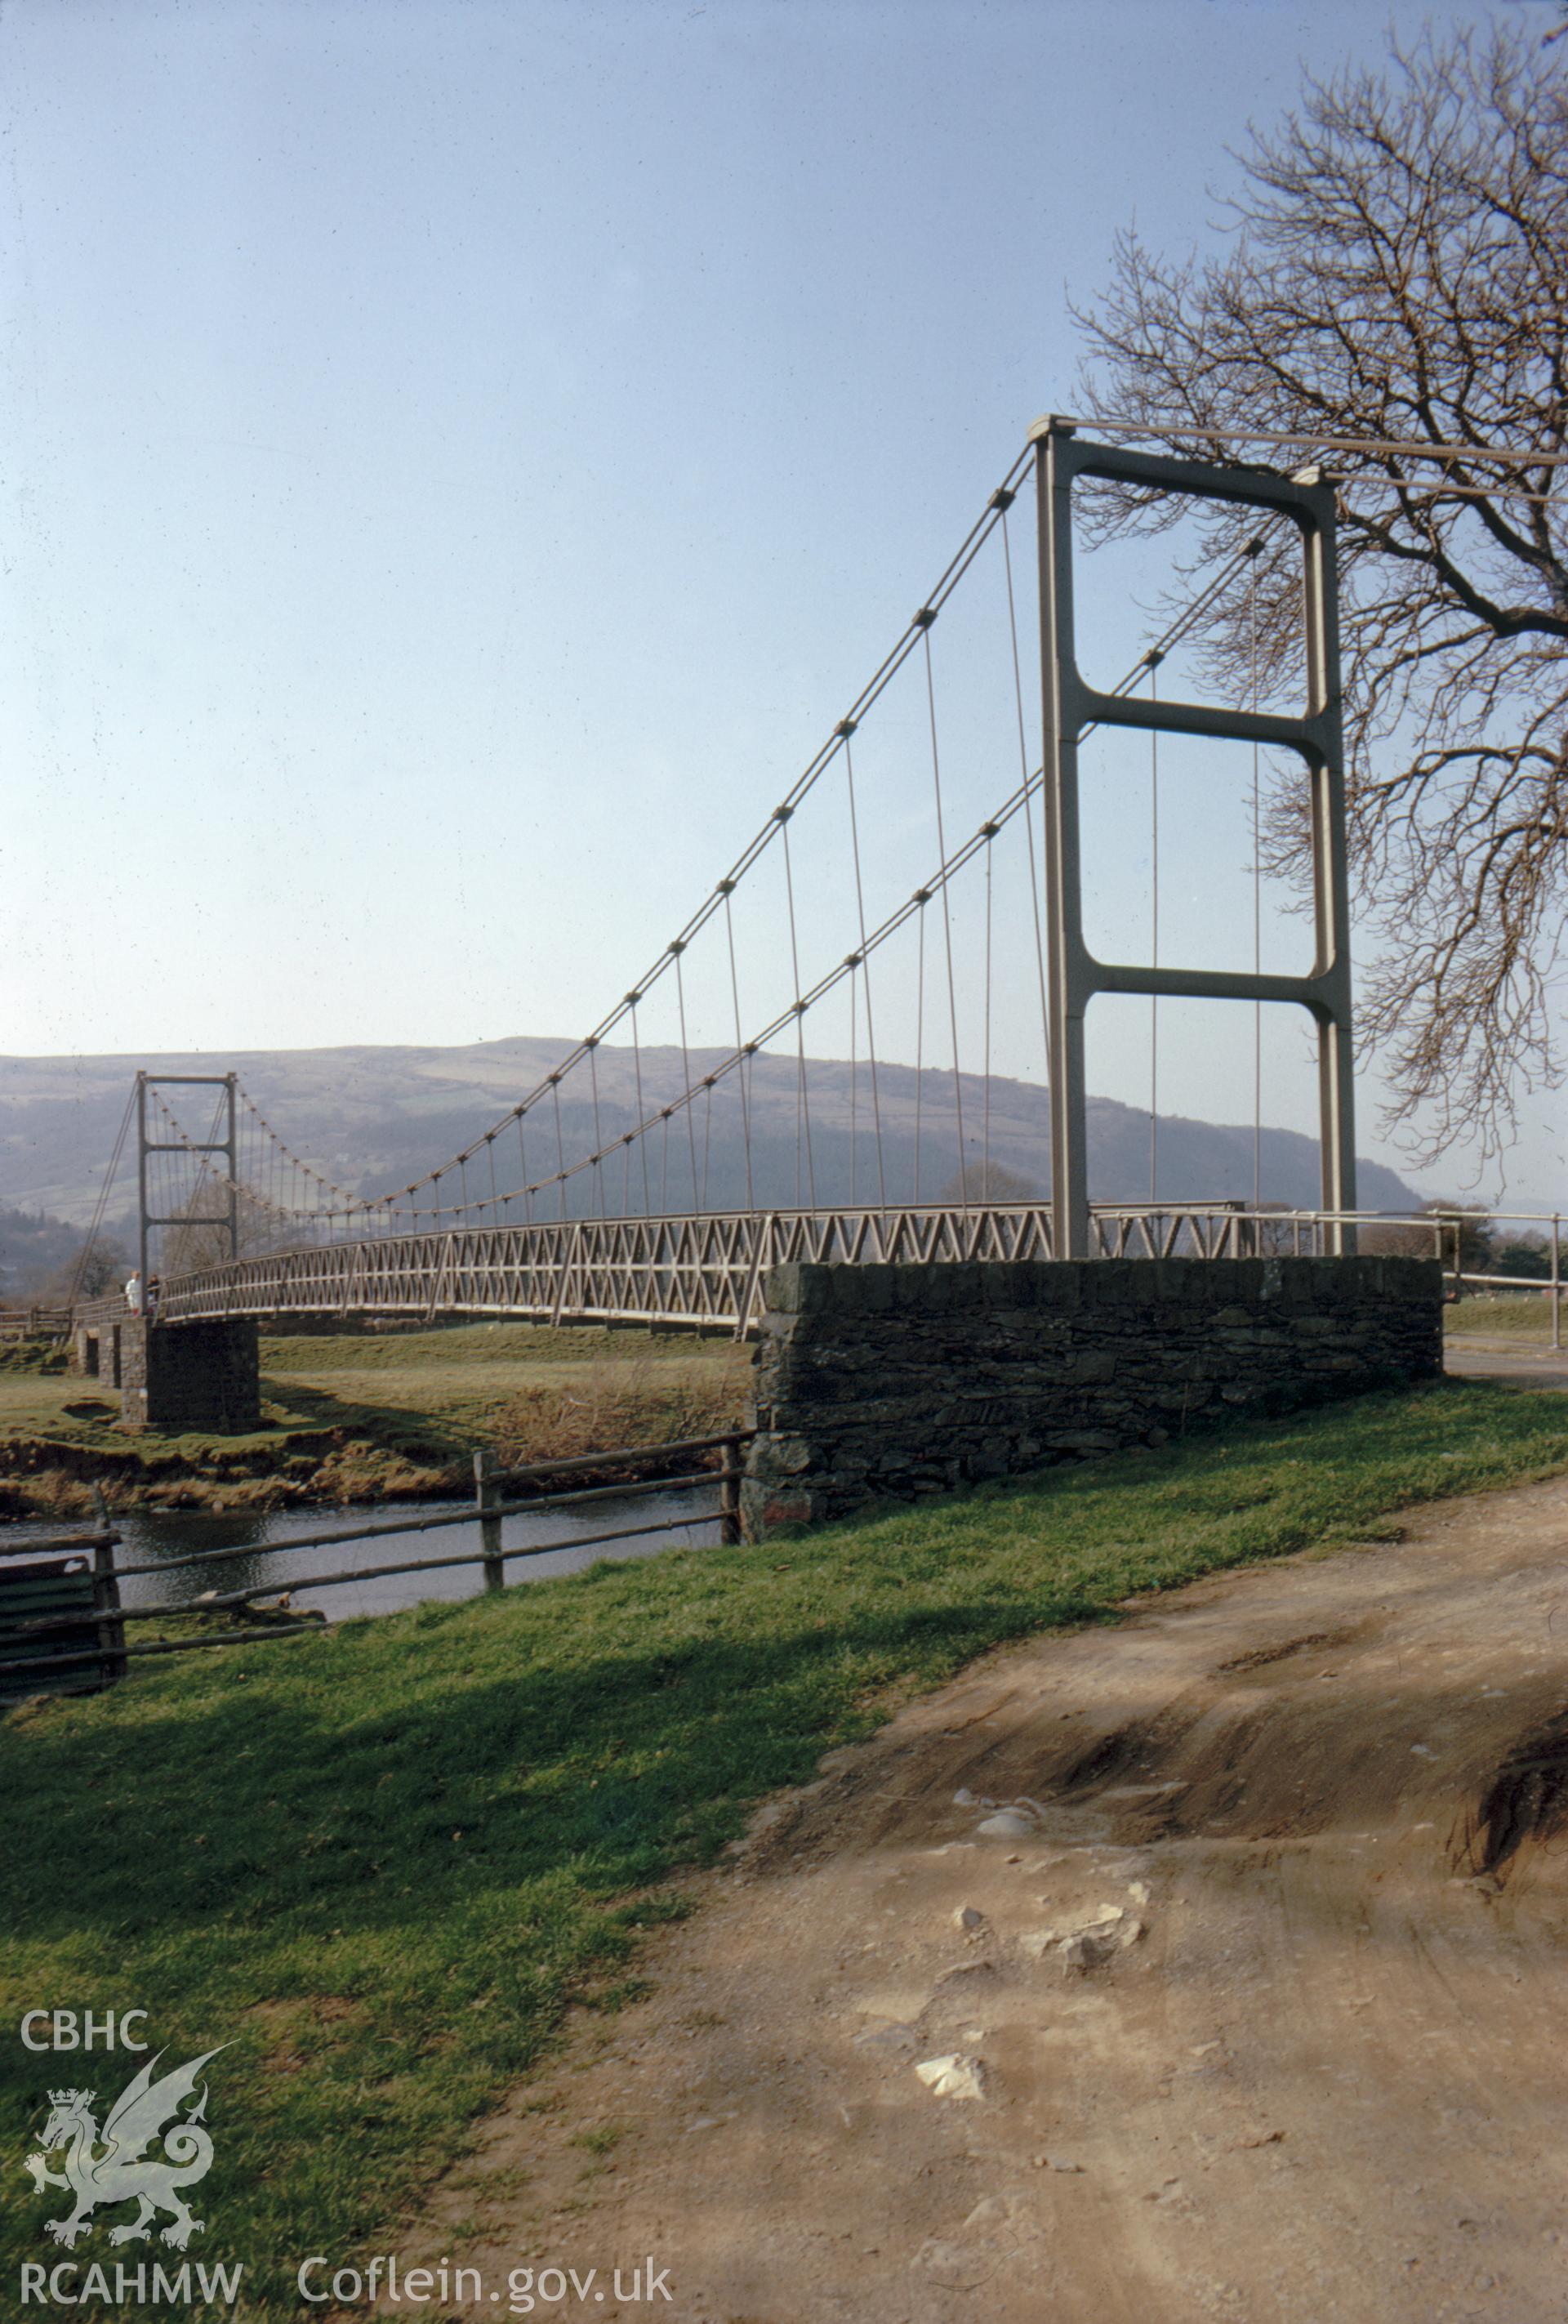 Digital copy of a colour slide showing view of the suspension bridge at Llanrwst, taken by Douglas Hague, c1970.